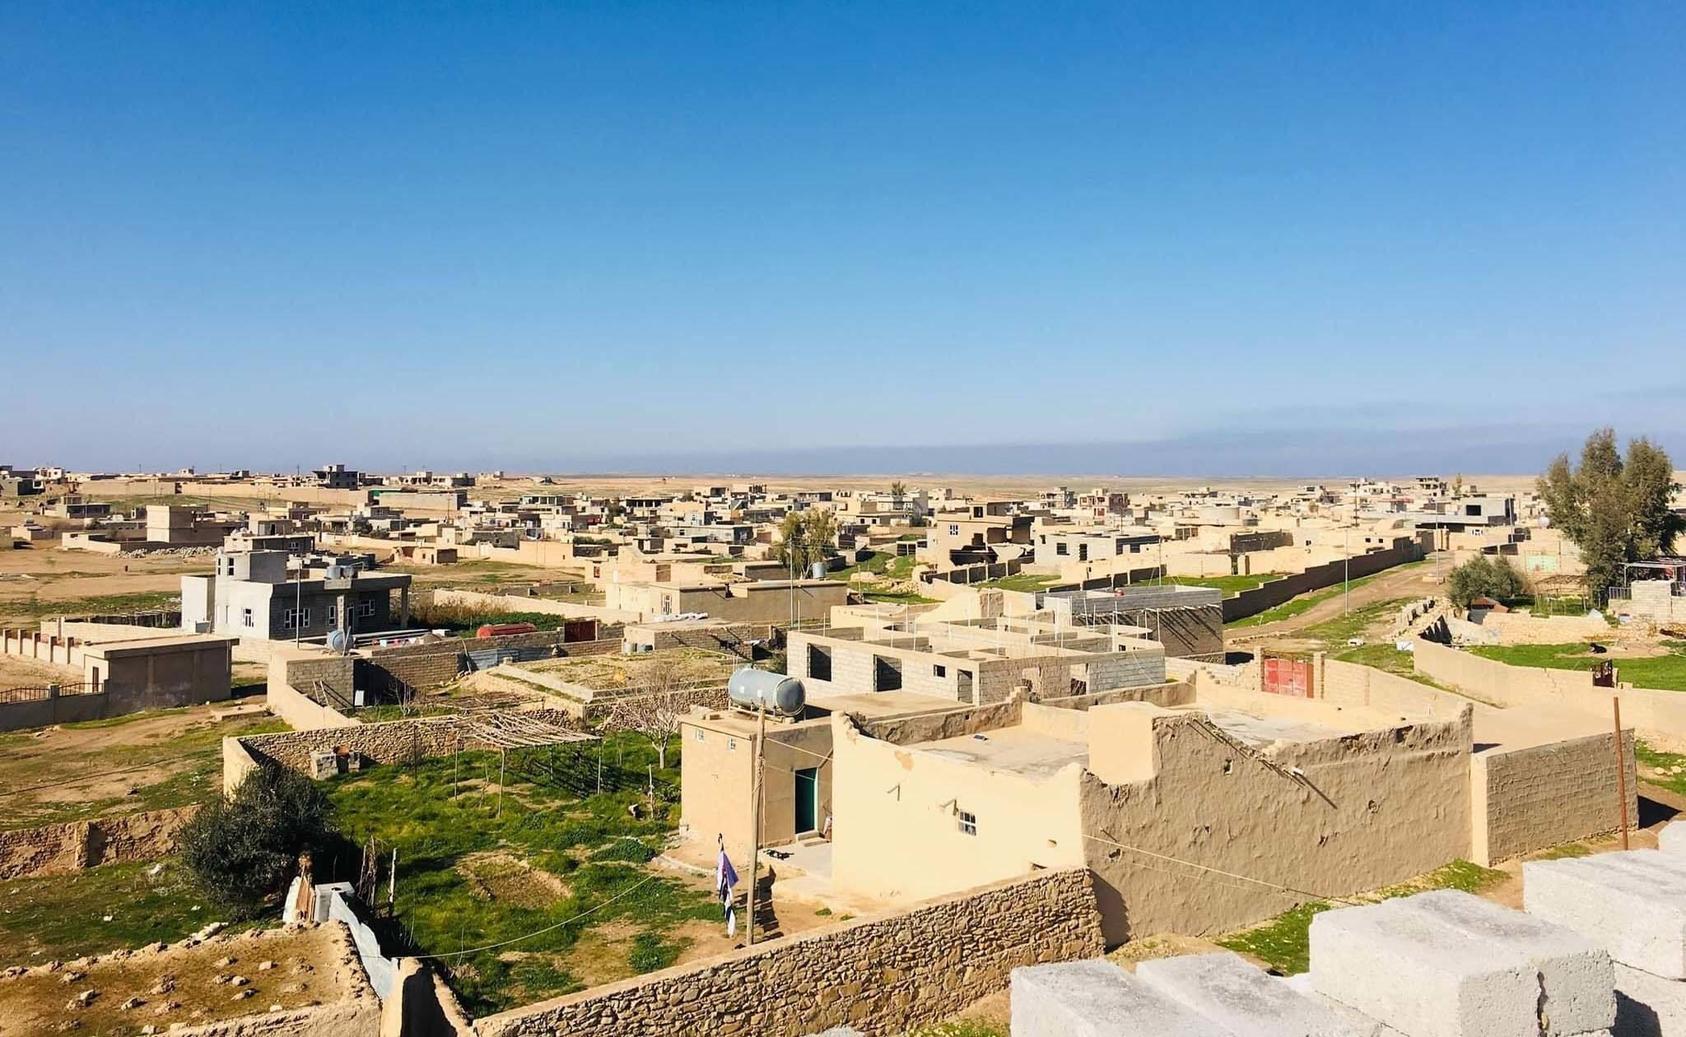 The Yazidi-majority village of Duhola in Sinjar, Iraq. April 8, 2019. (Wikimedia Commons/Êzîdxan)